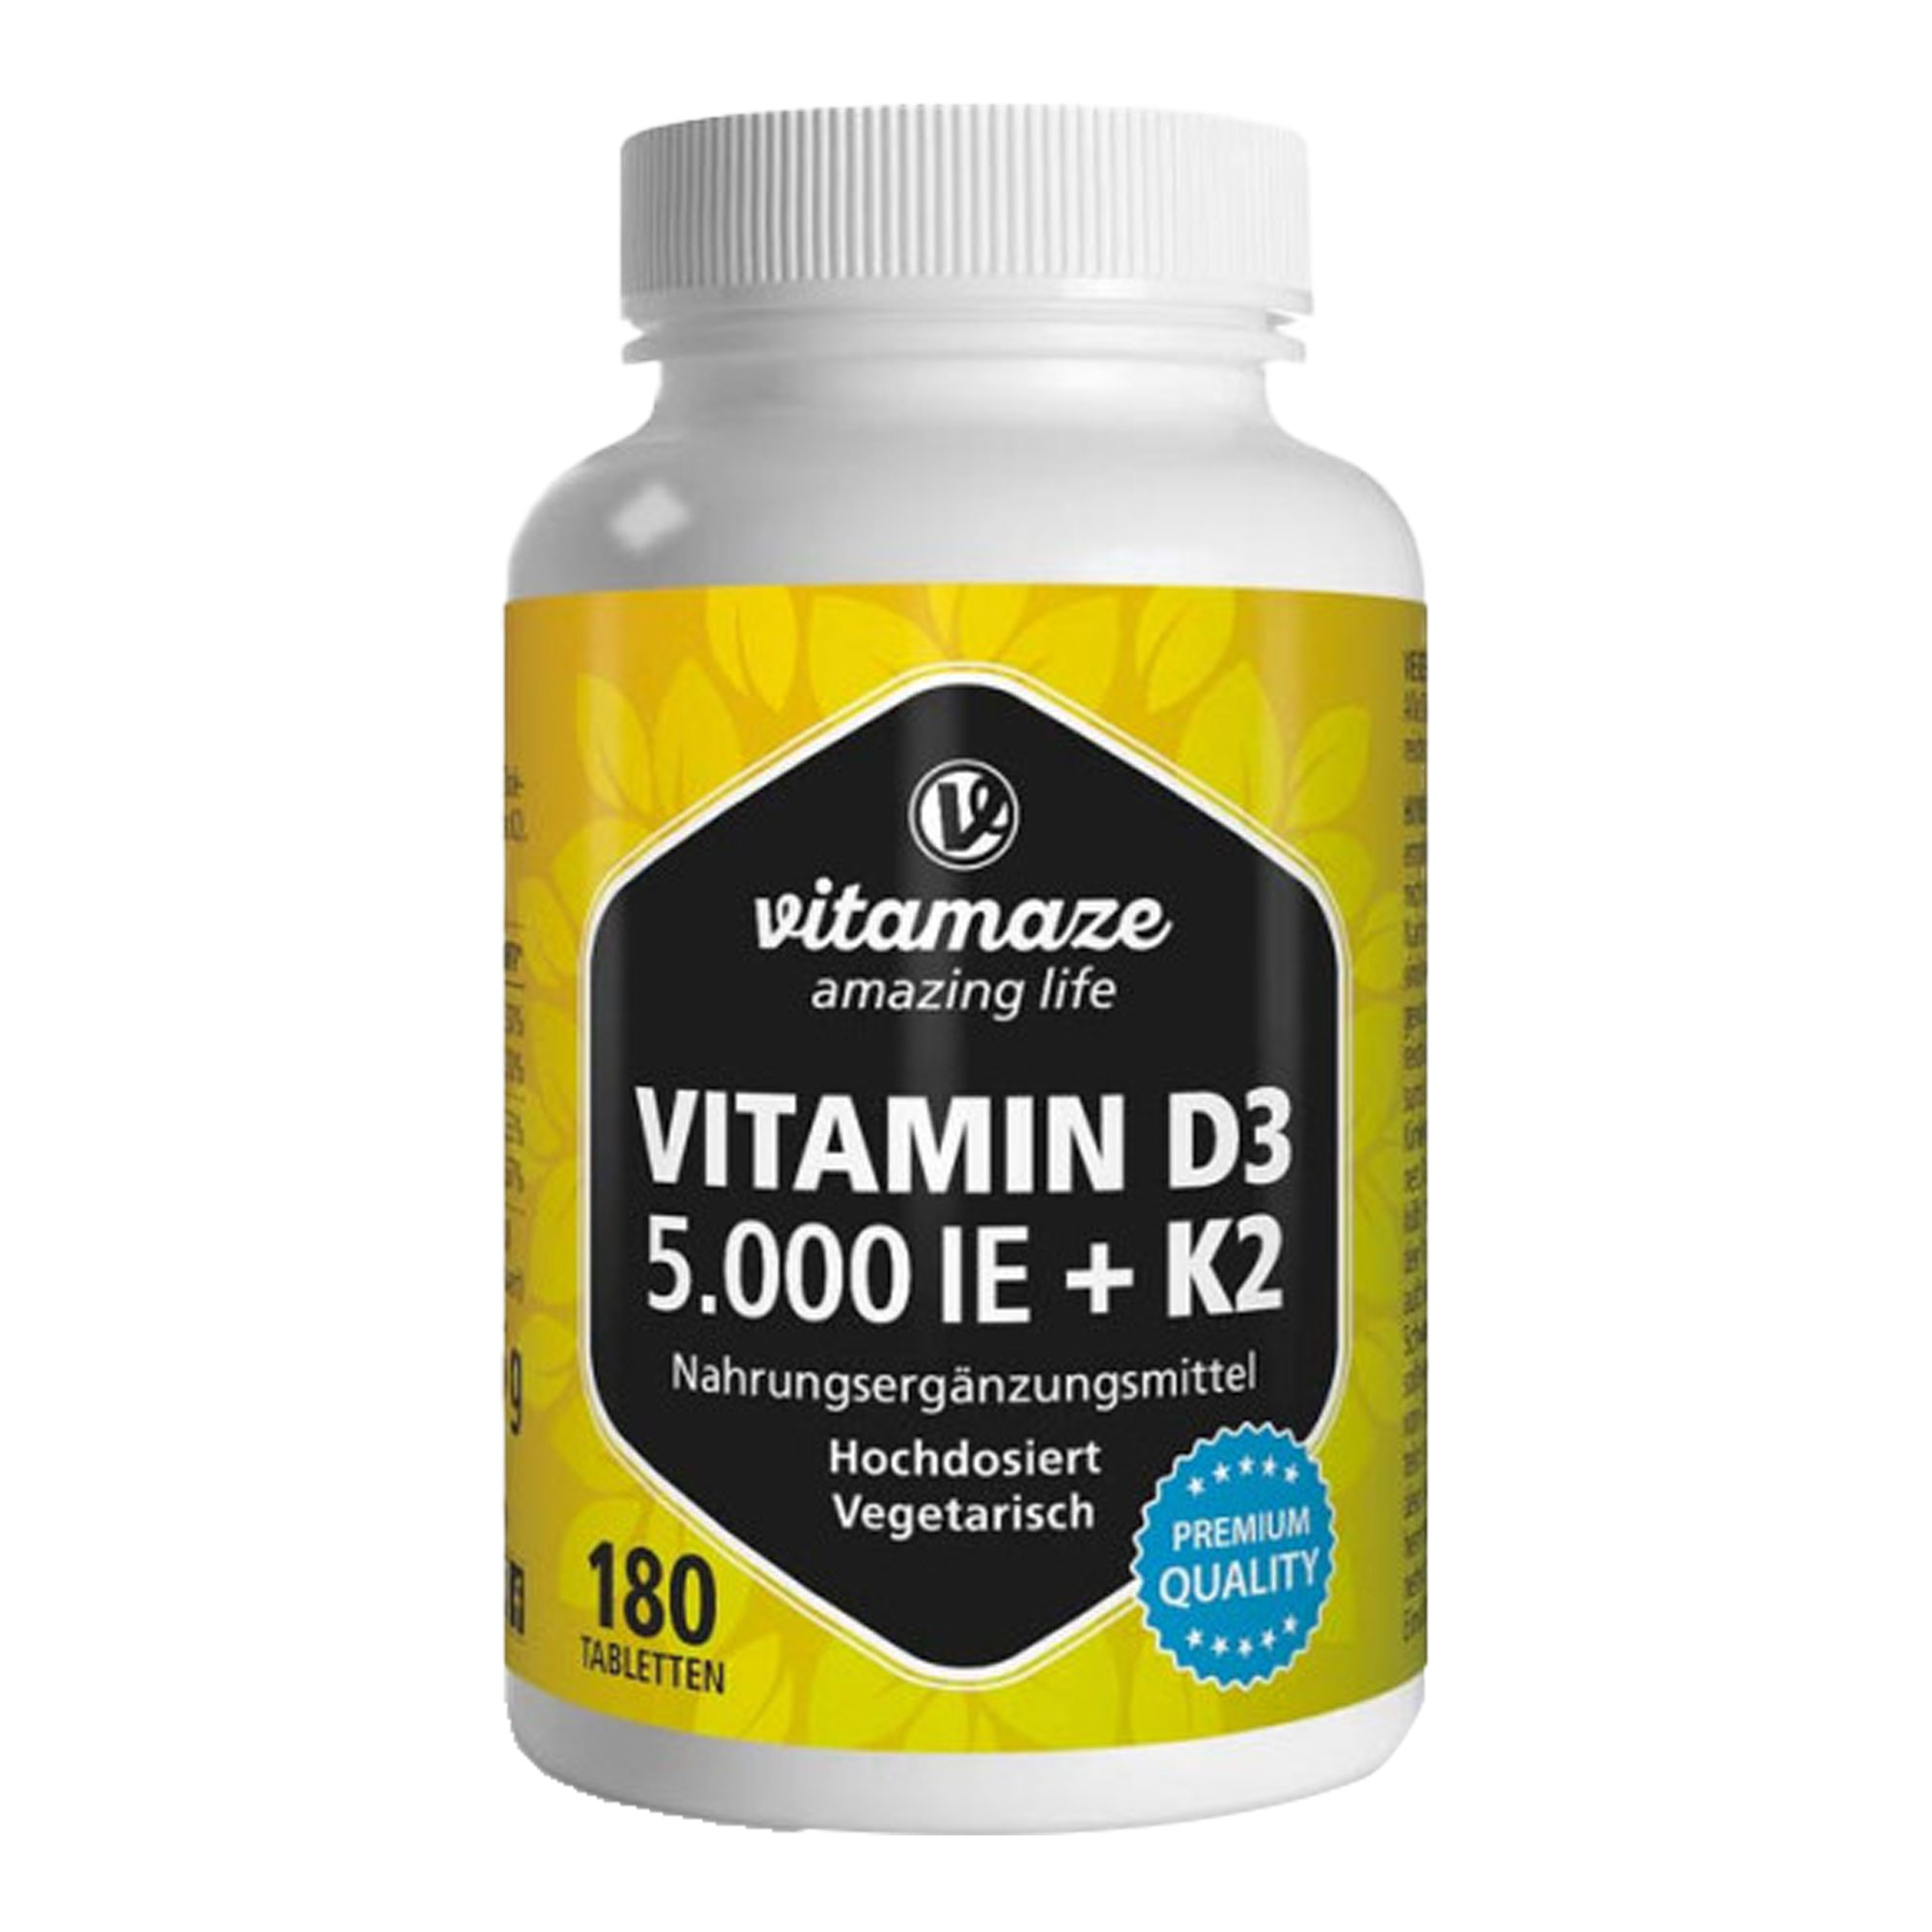 Nahrungsergänzungsmittel mit hochdosiertem Vitamin D3 und K2.